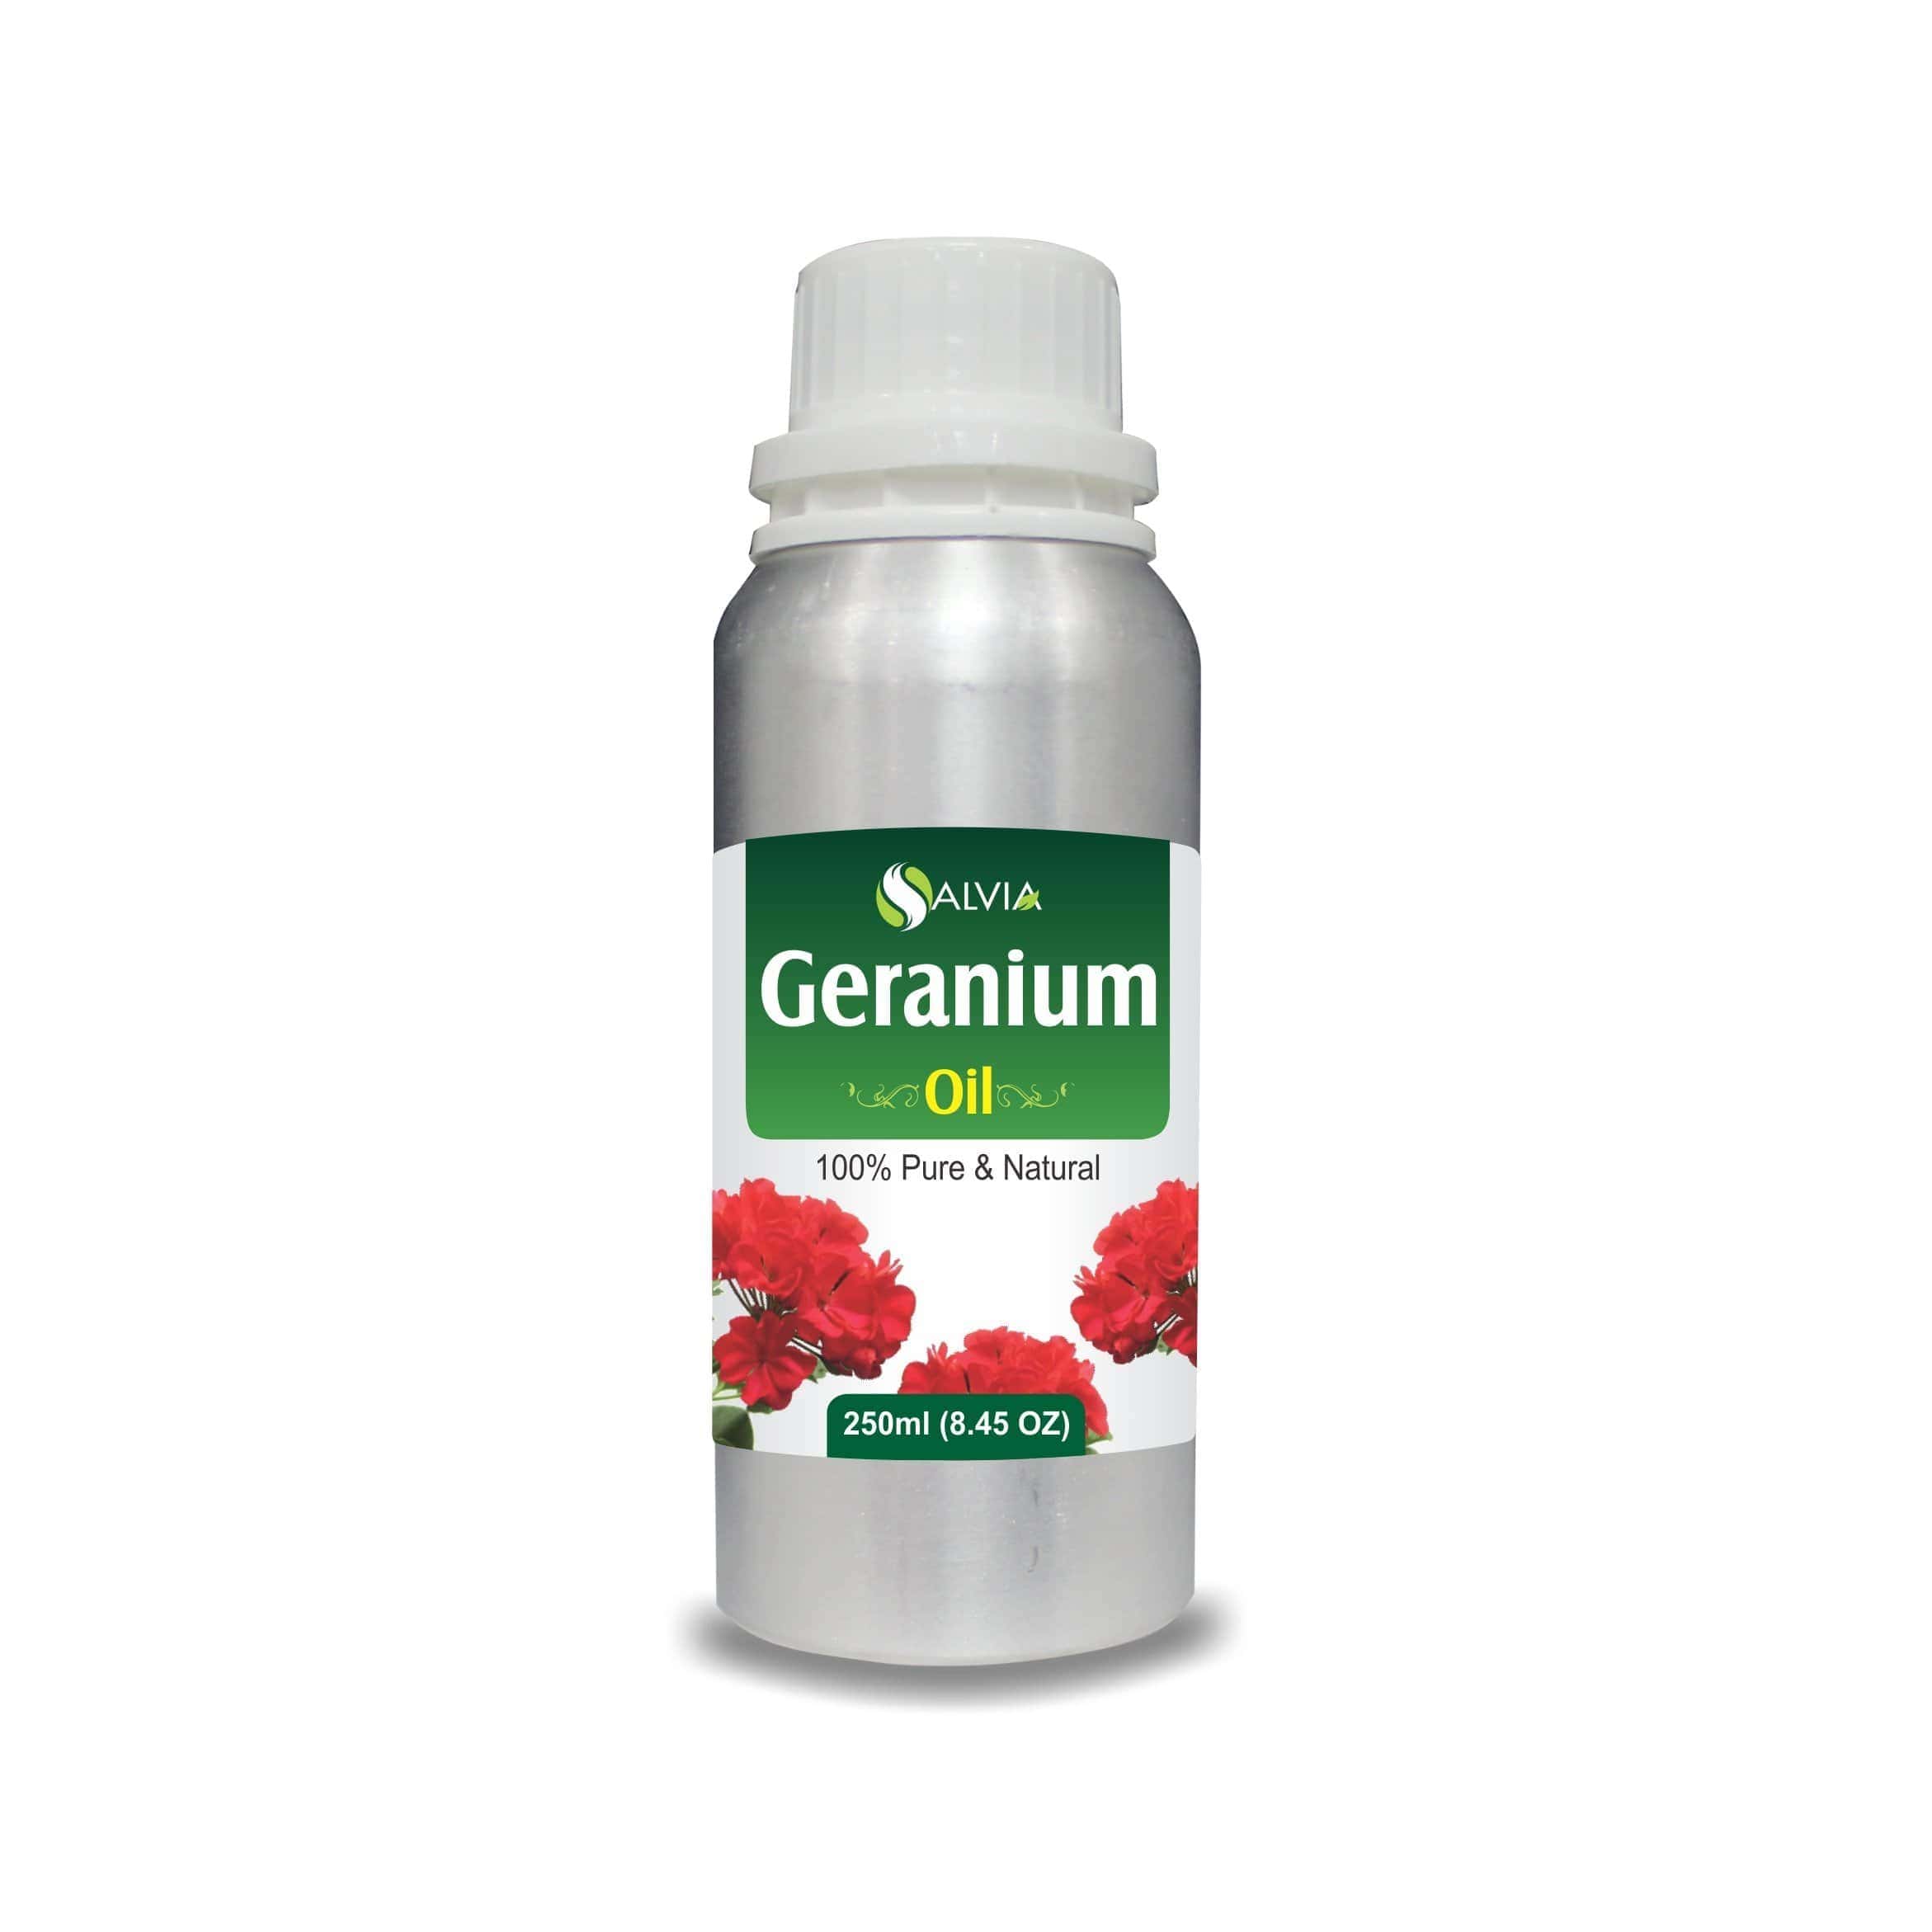 geranium oil for wrinkles